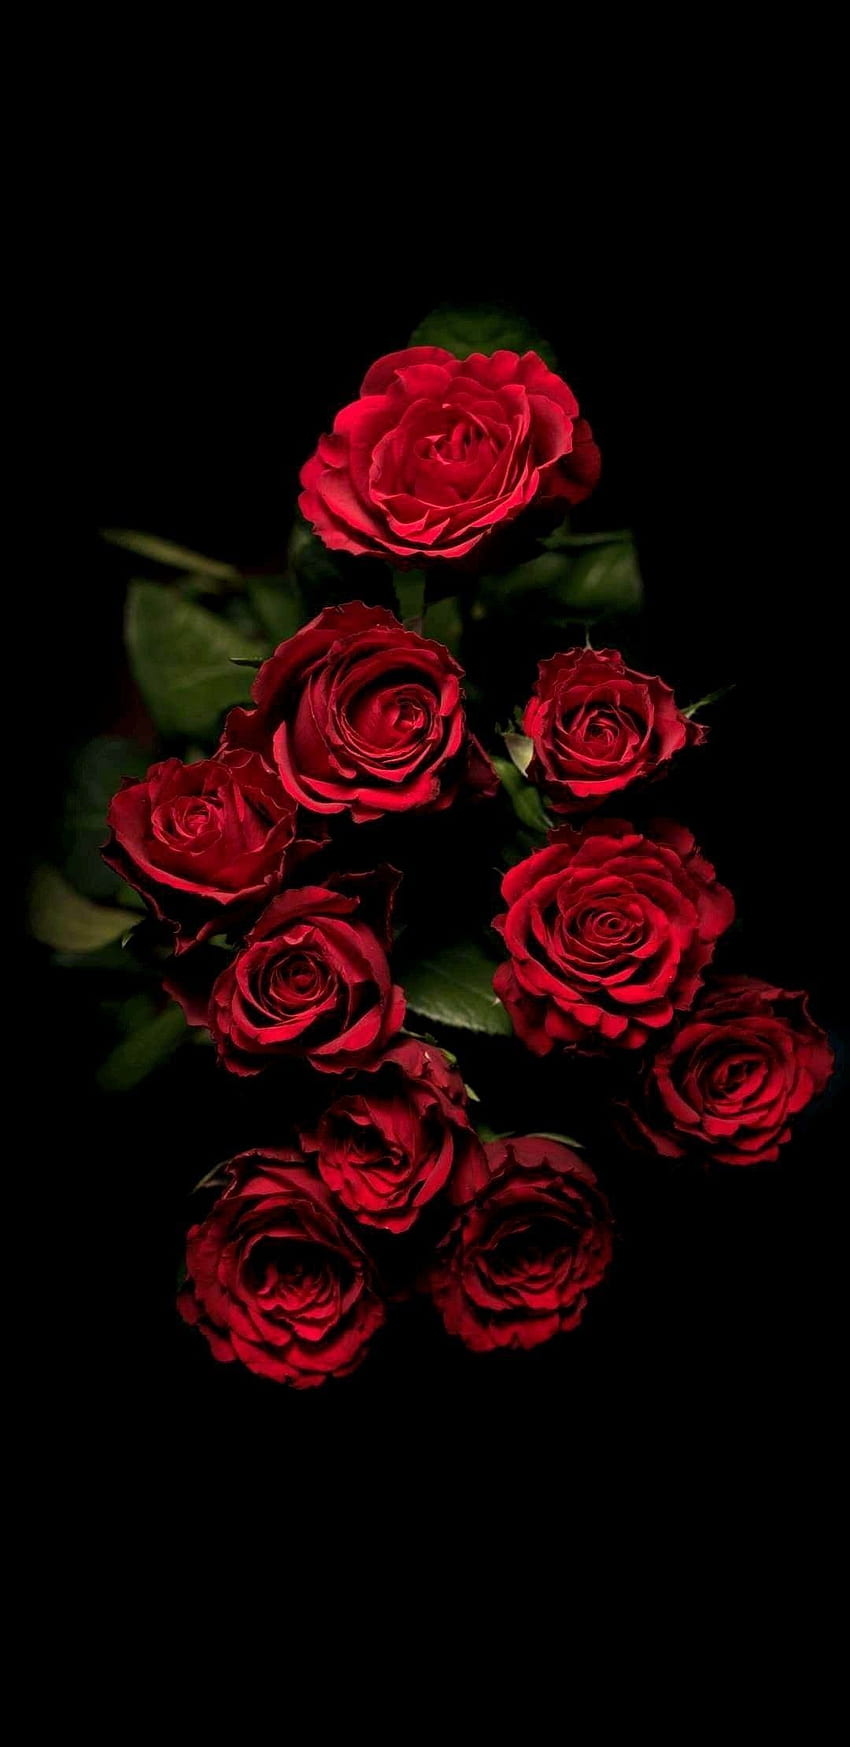 IPhone Rose, Elegant Red Rose HD phone wallpaper | Pxfuel